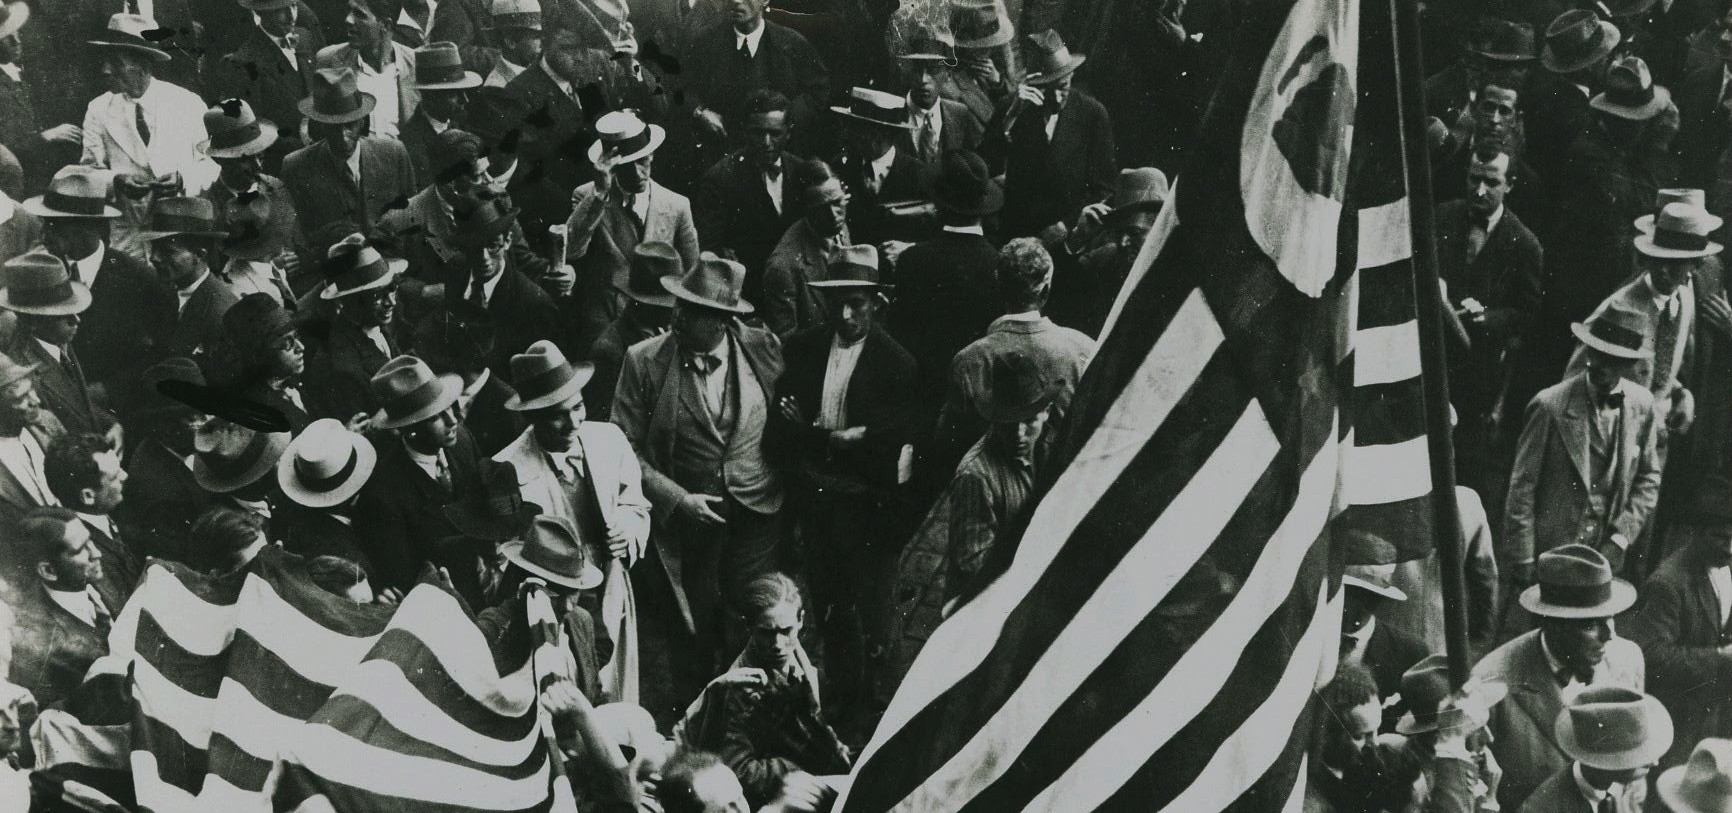 1932: Revolução, Constituição e Cidadania – A força de um ideal